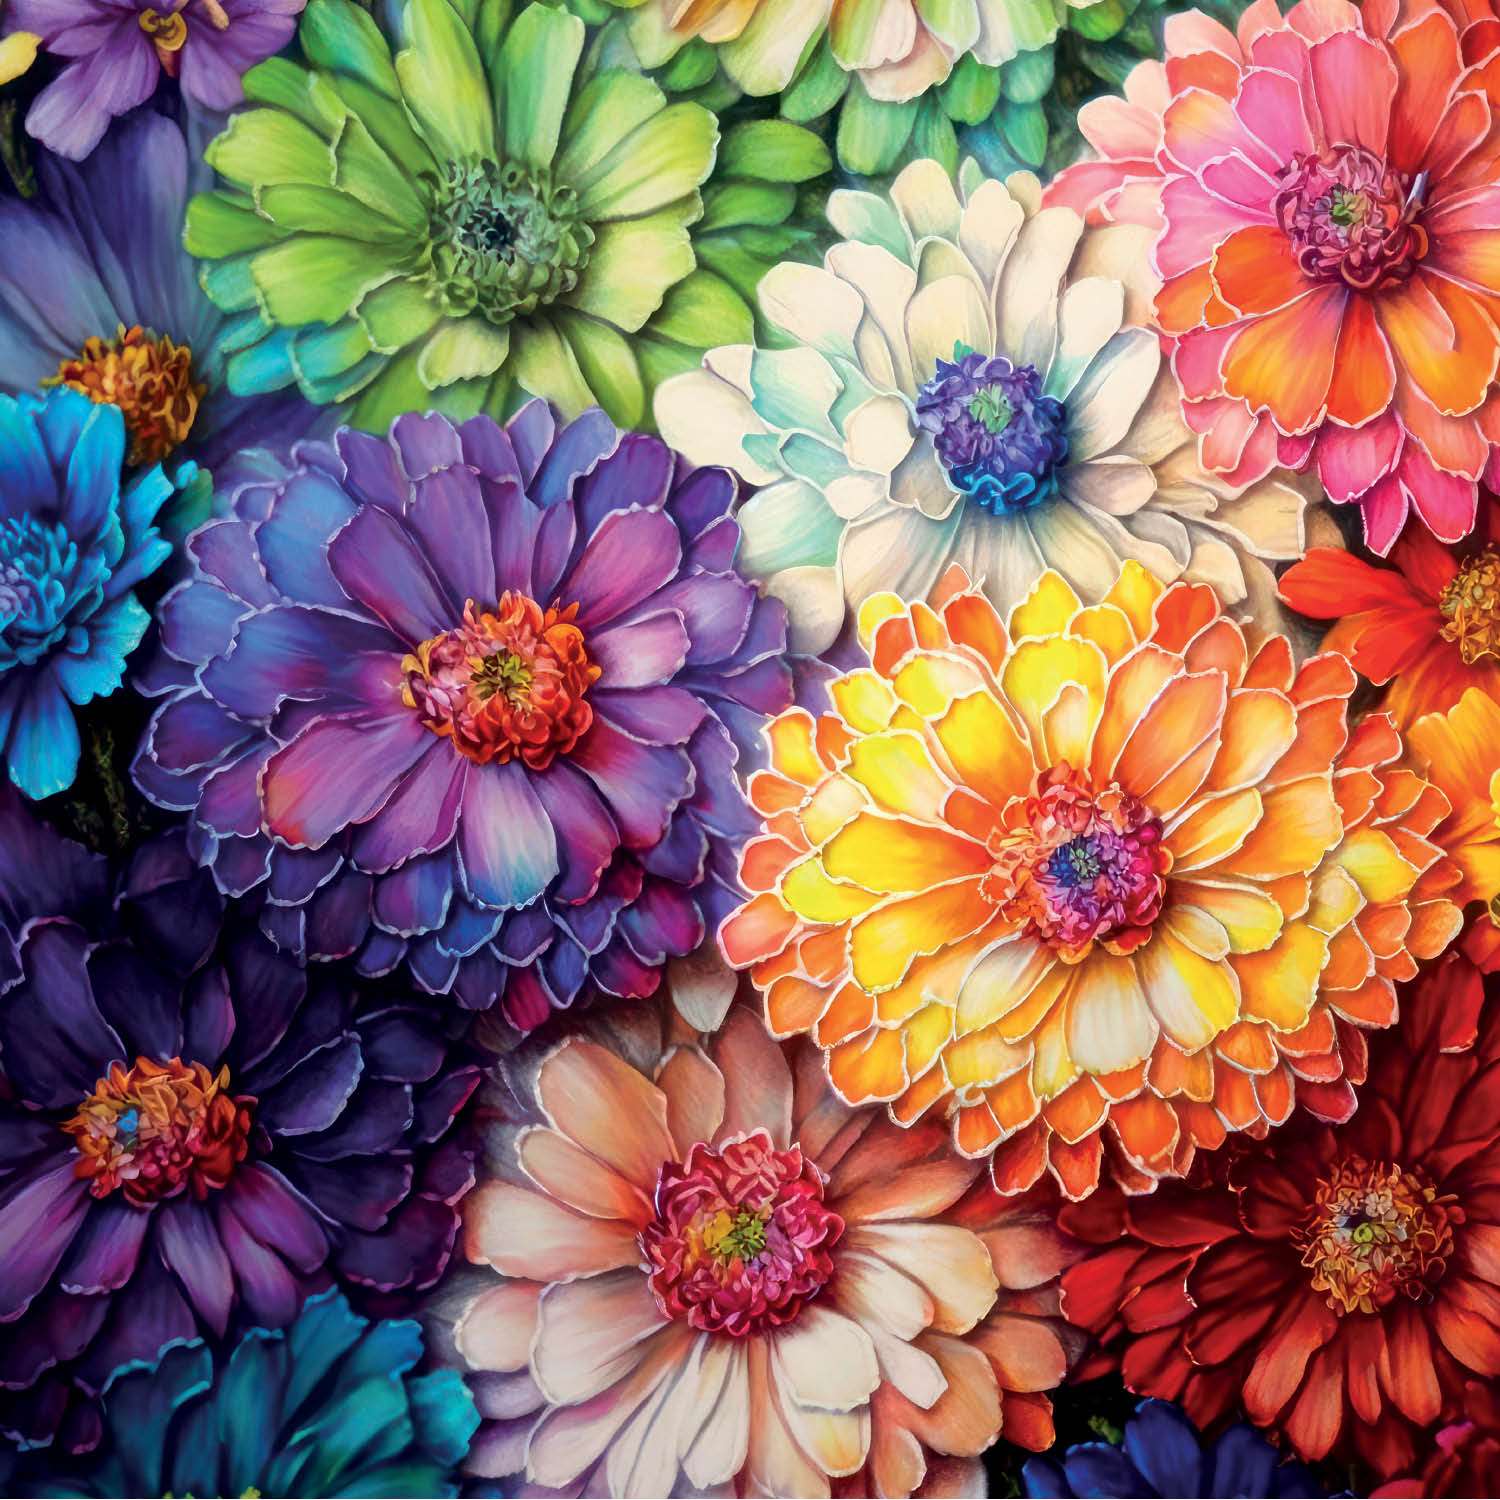 Rainbow of Flowers - 1000 Piece Jigsaw Puzzle | Cross & Glory